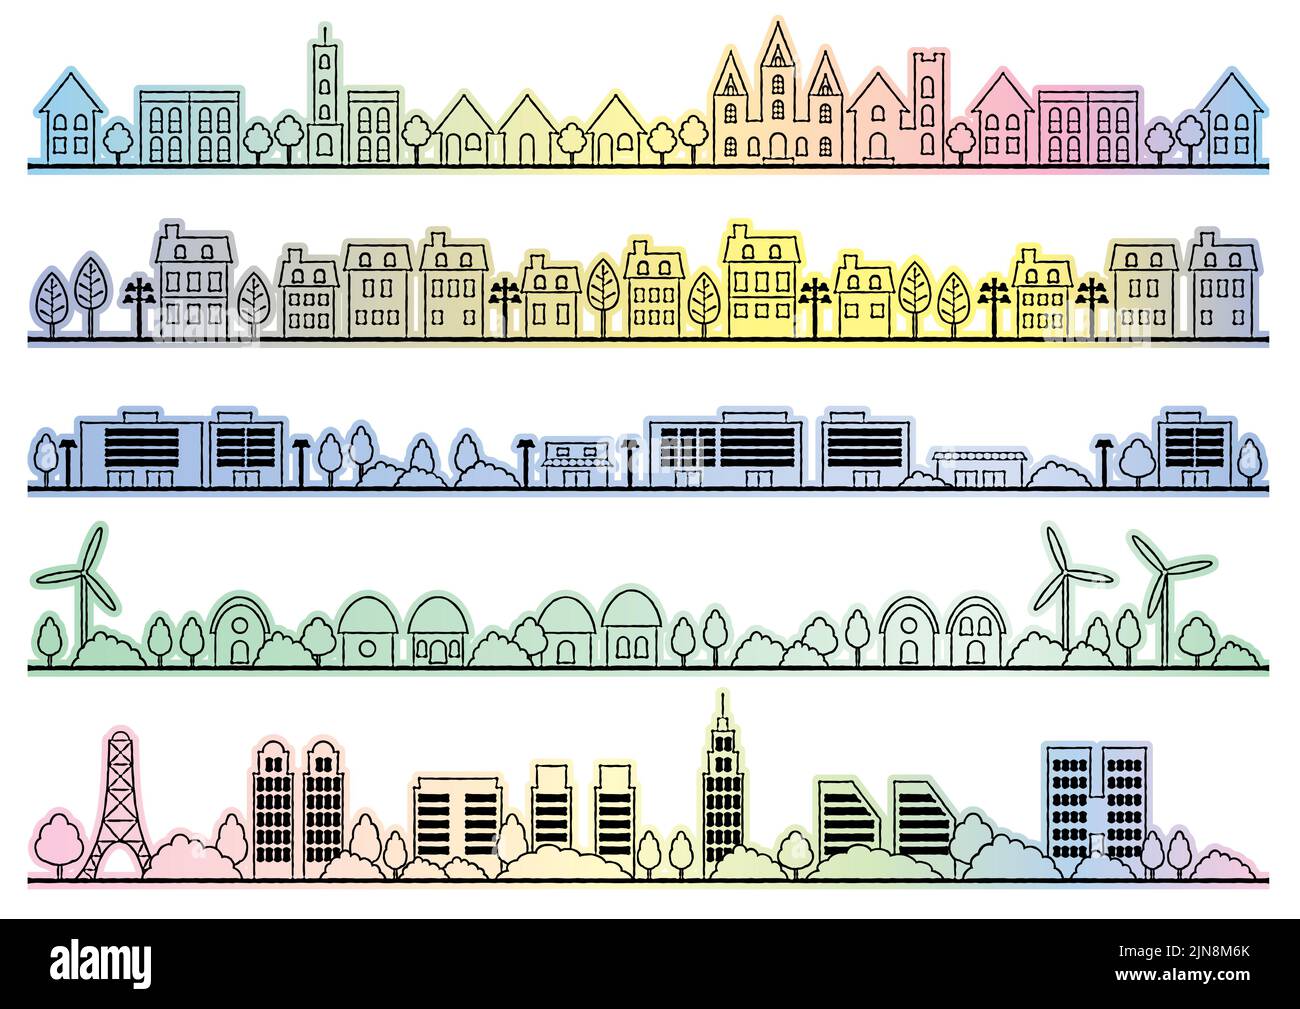 Einfache Stadtbild Zeichnung Set isoliert auf Einem weißen Hintergrund. Vektorgrafik. Stock Vektor